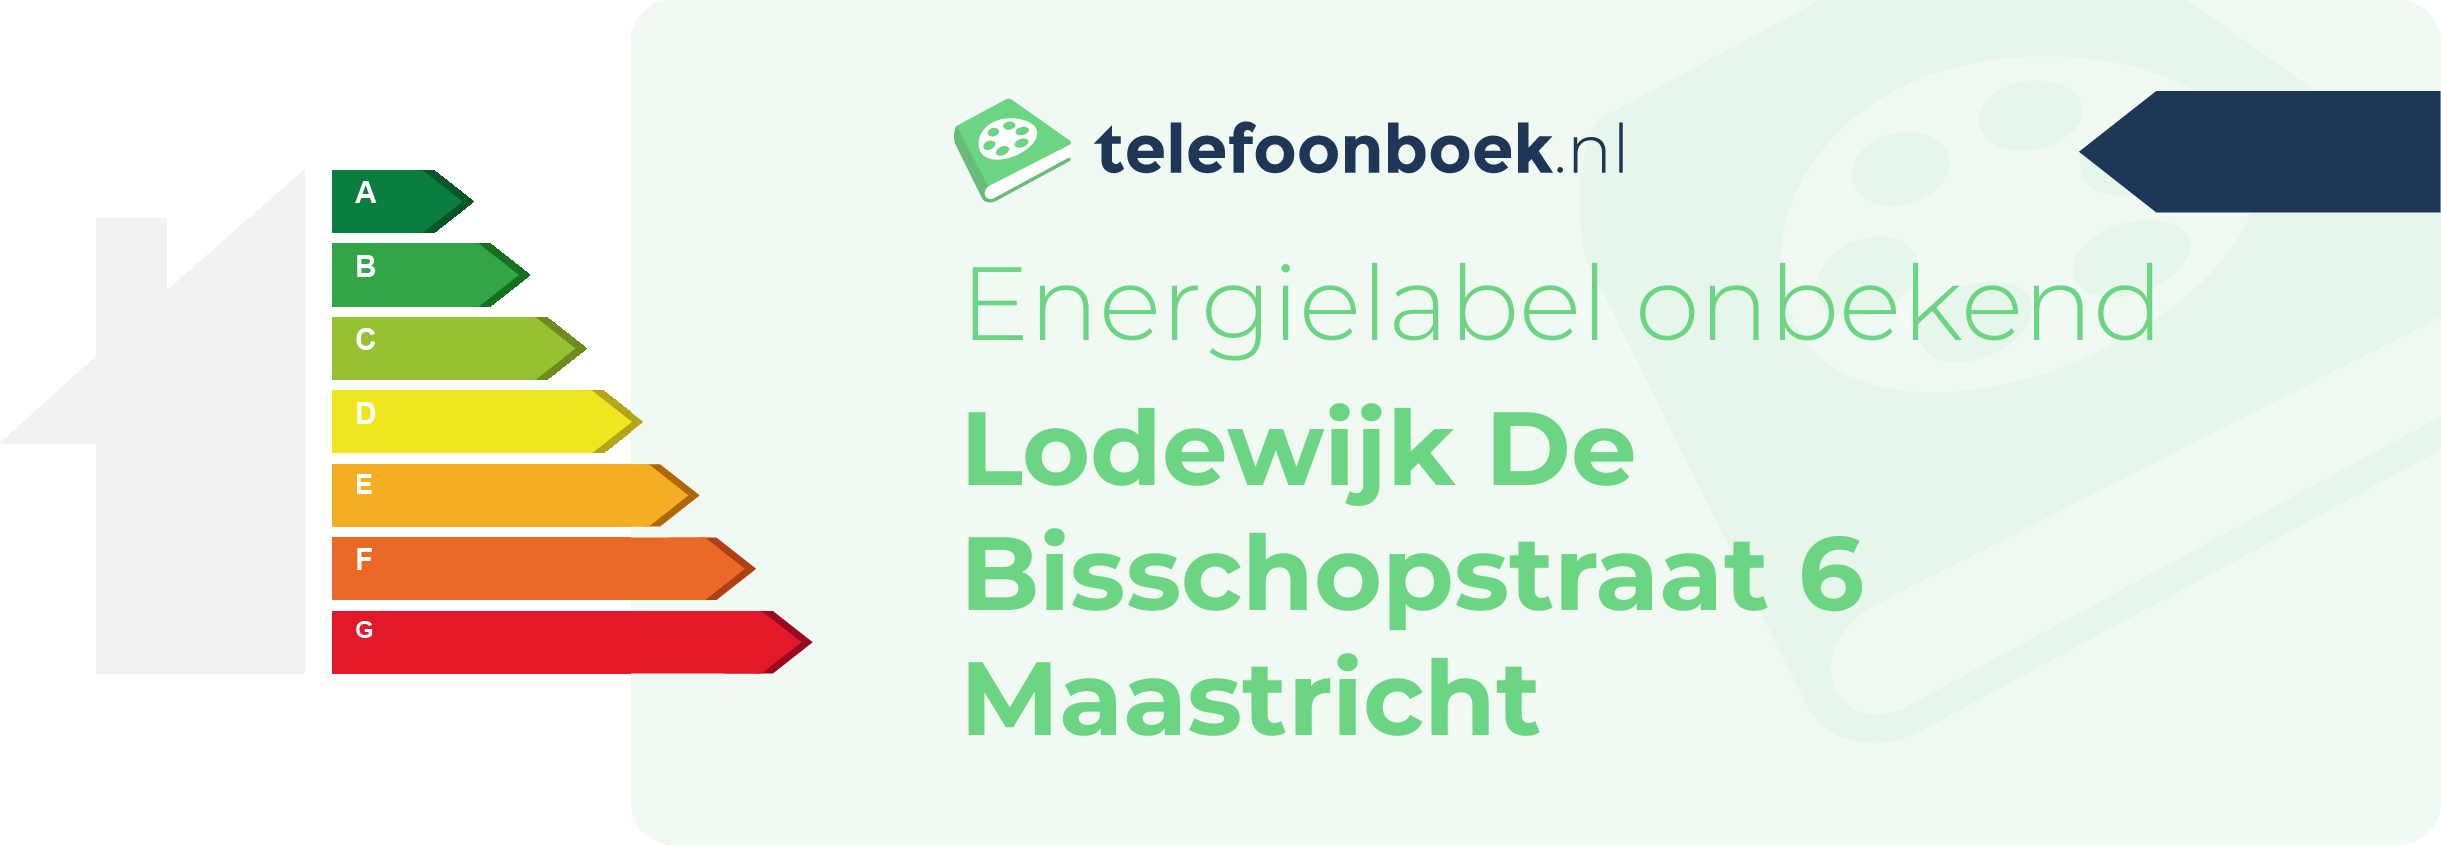 Energielabel Lodewijk De Bisschopstraat 6 Maastricht